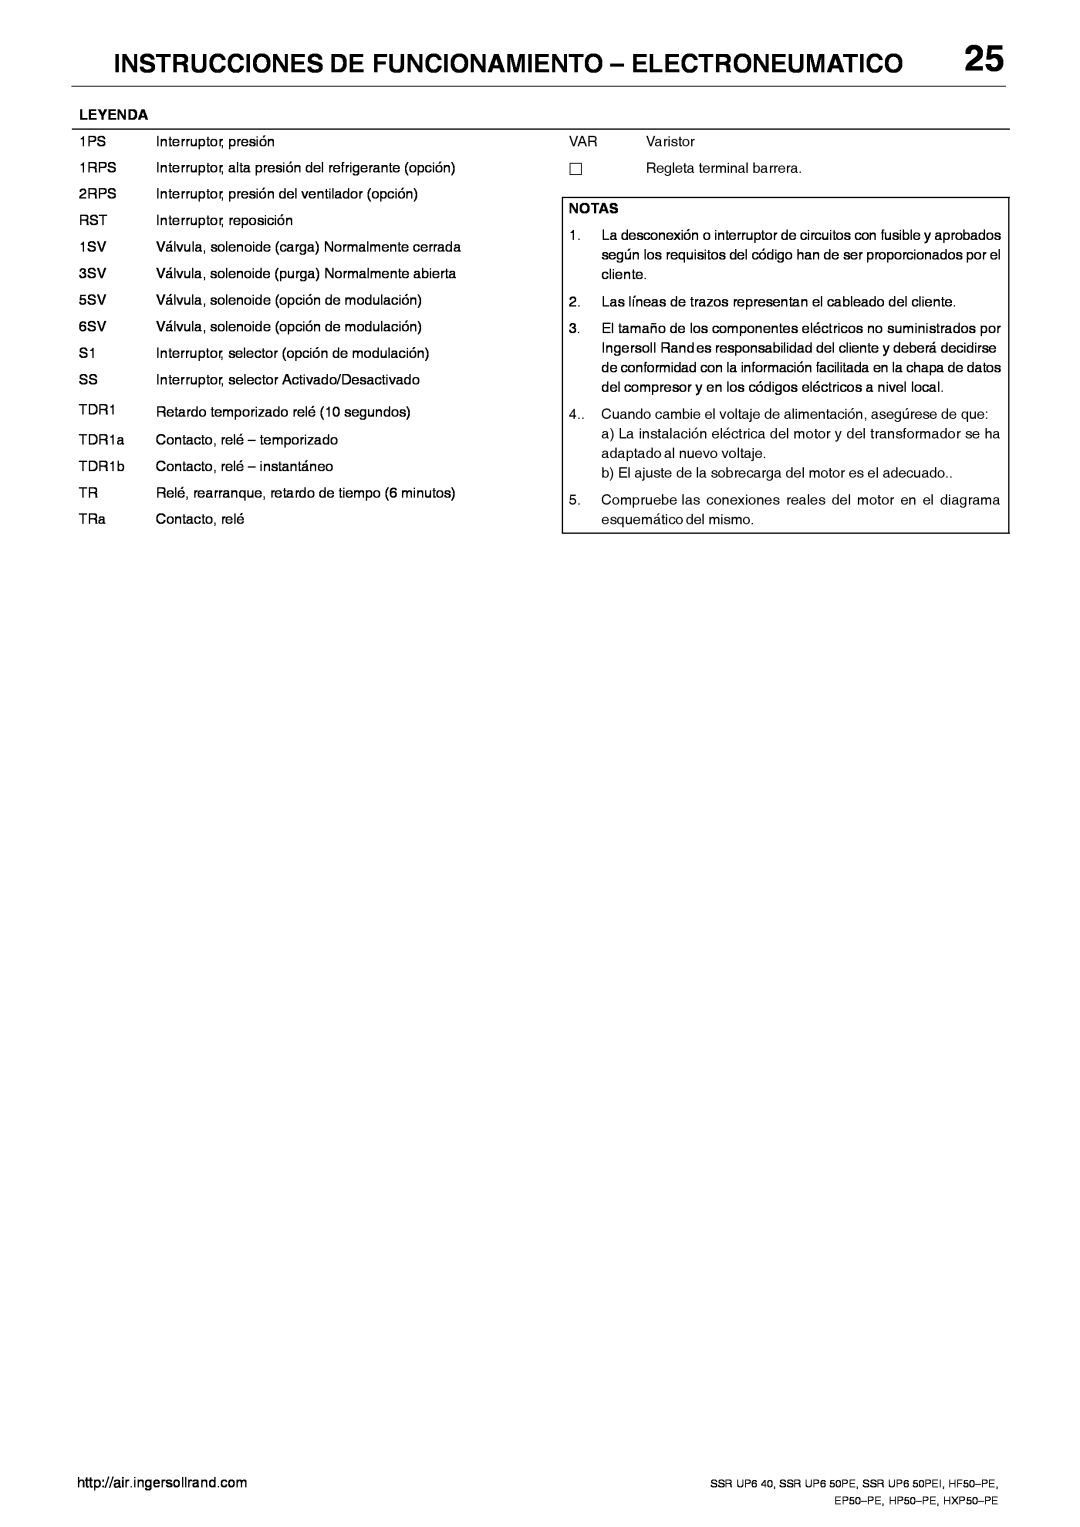 Ingersoll-Rand HP50-PE Instrucciones De Funcionamiento - Electroneumatico, Relé, rearranque, retardo de tiempo 6 minutos 